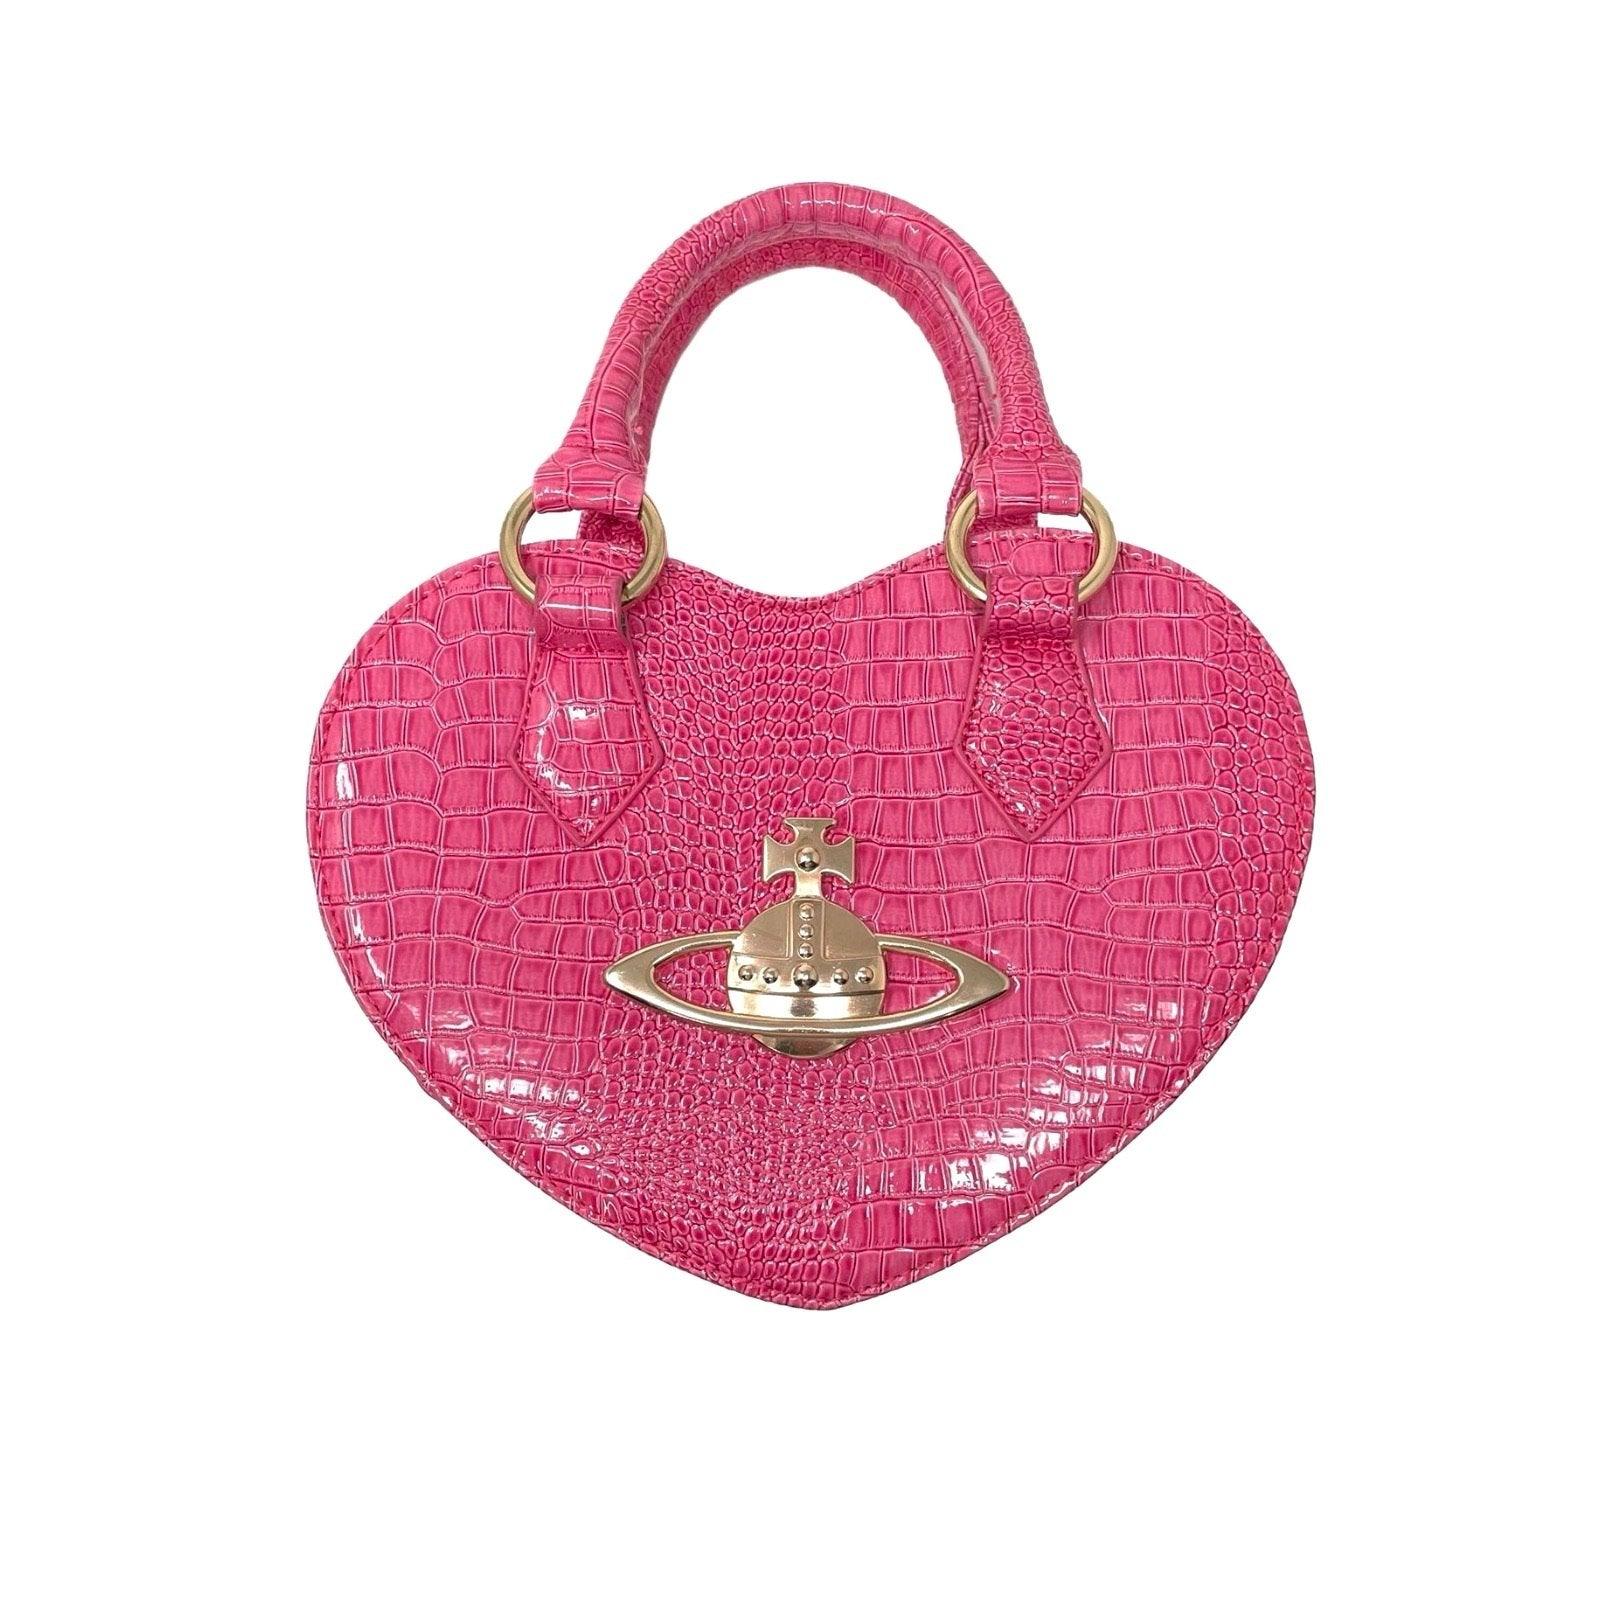 Treasures of NYC - Vivienne Westwood Hot Pink Heart Bag